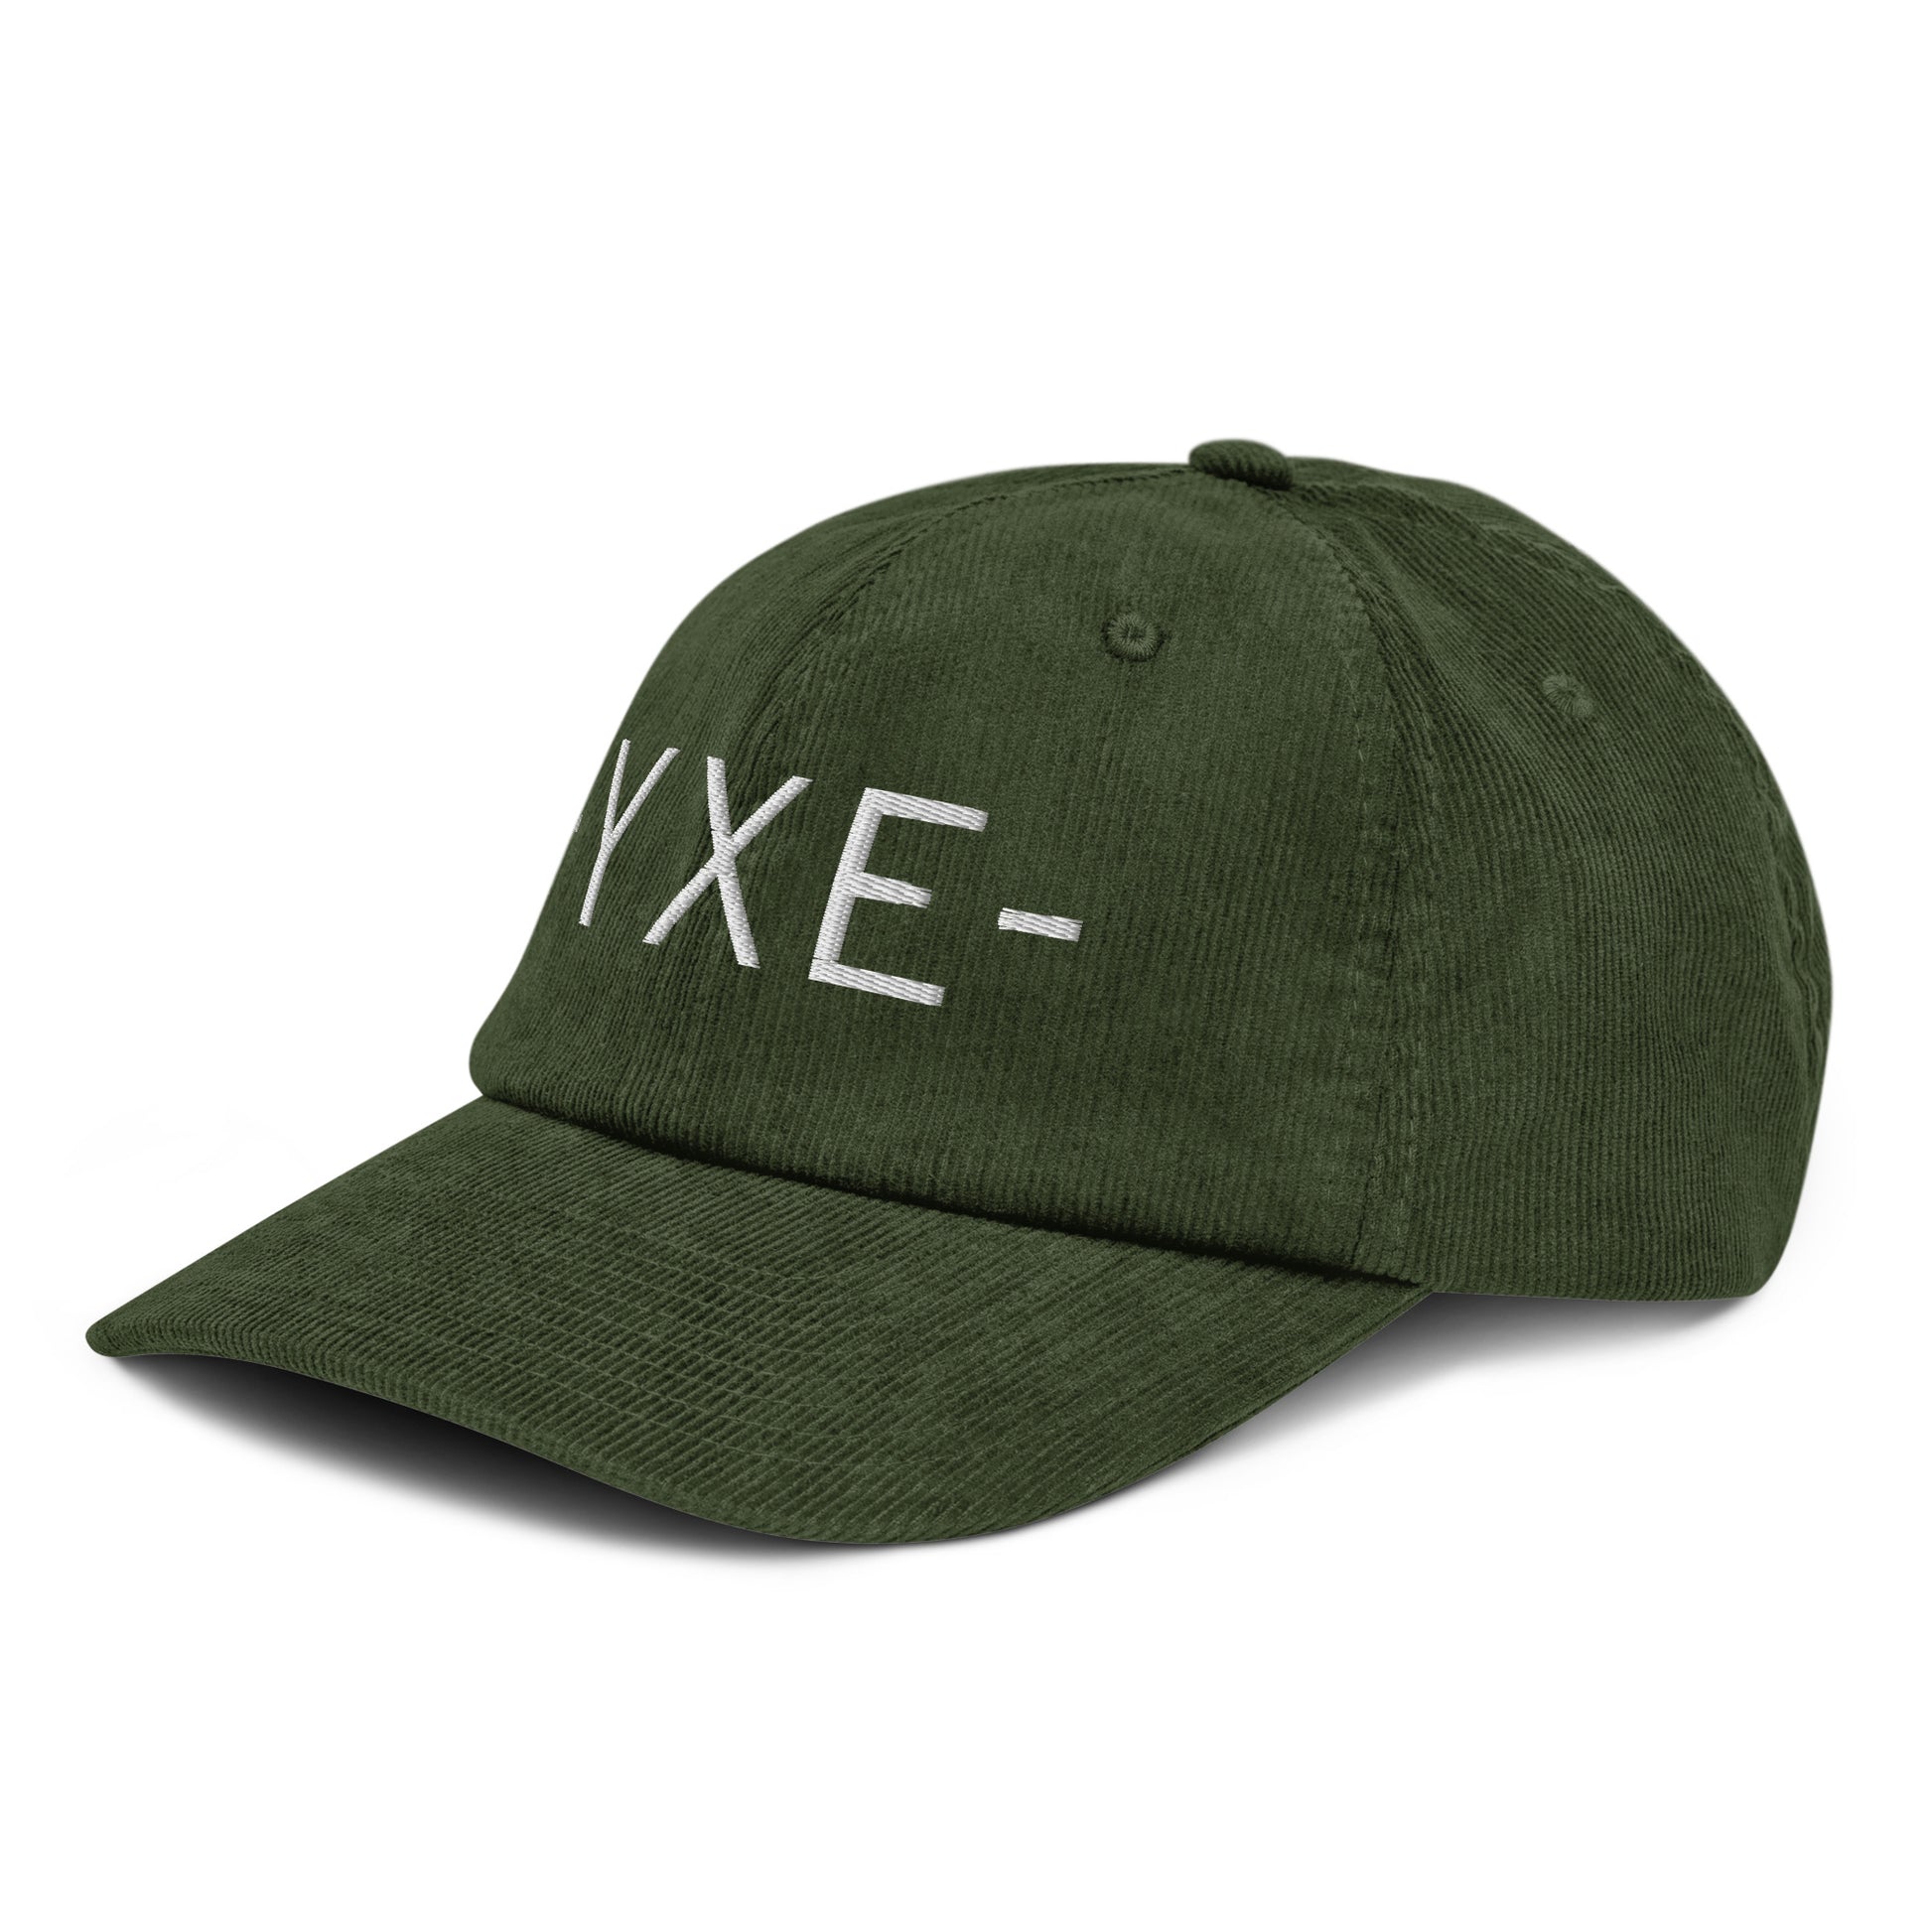 Souvenir Corduroy Hat - White • YXE Saskatoon • YHM Designs - Image 17